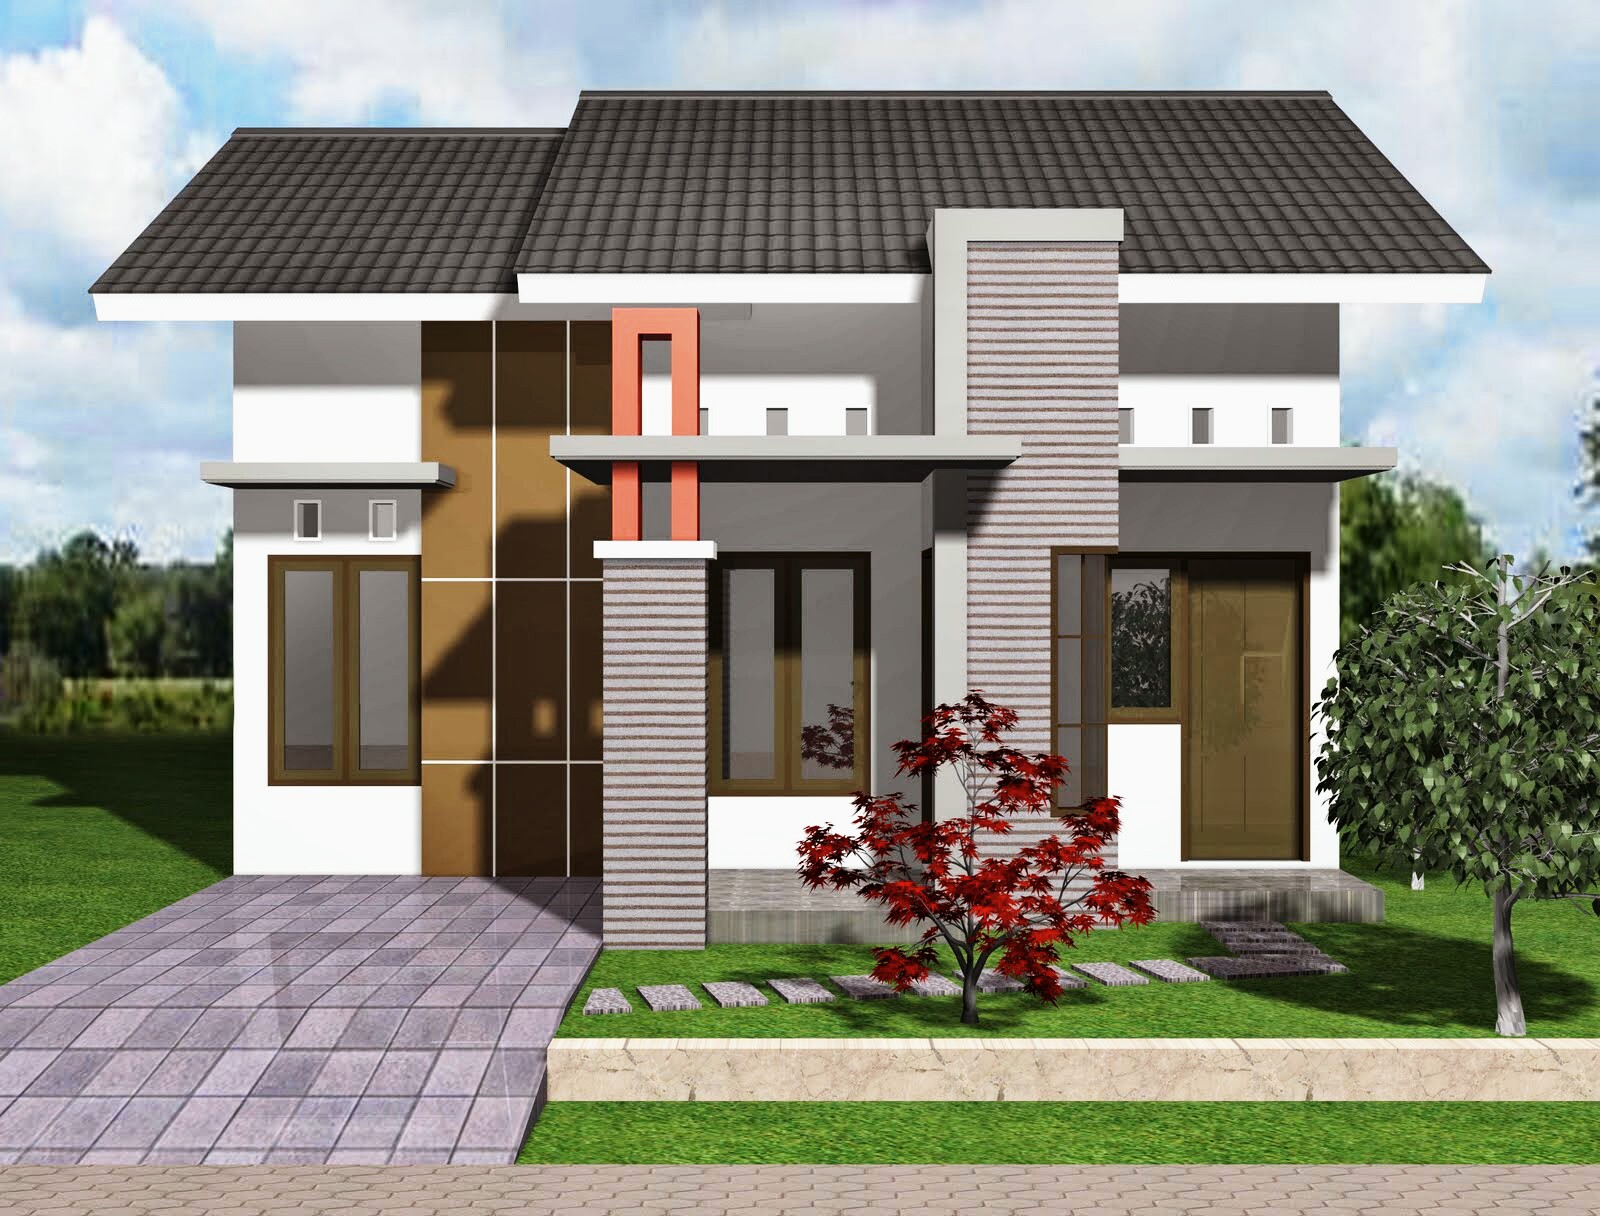 40 Desain Rumah Minimalis Tipe 36 Terbaru 2017 2018 Rumahku Unik